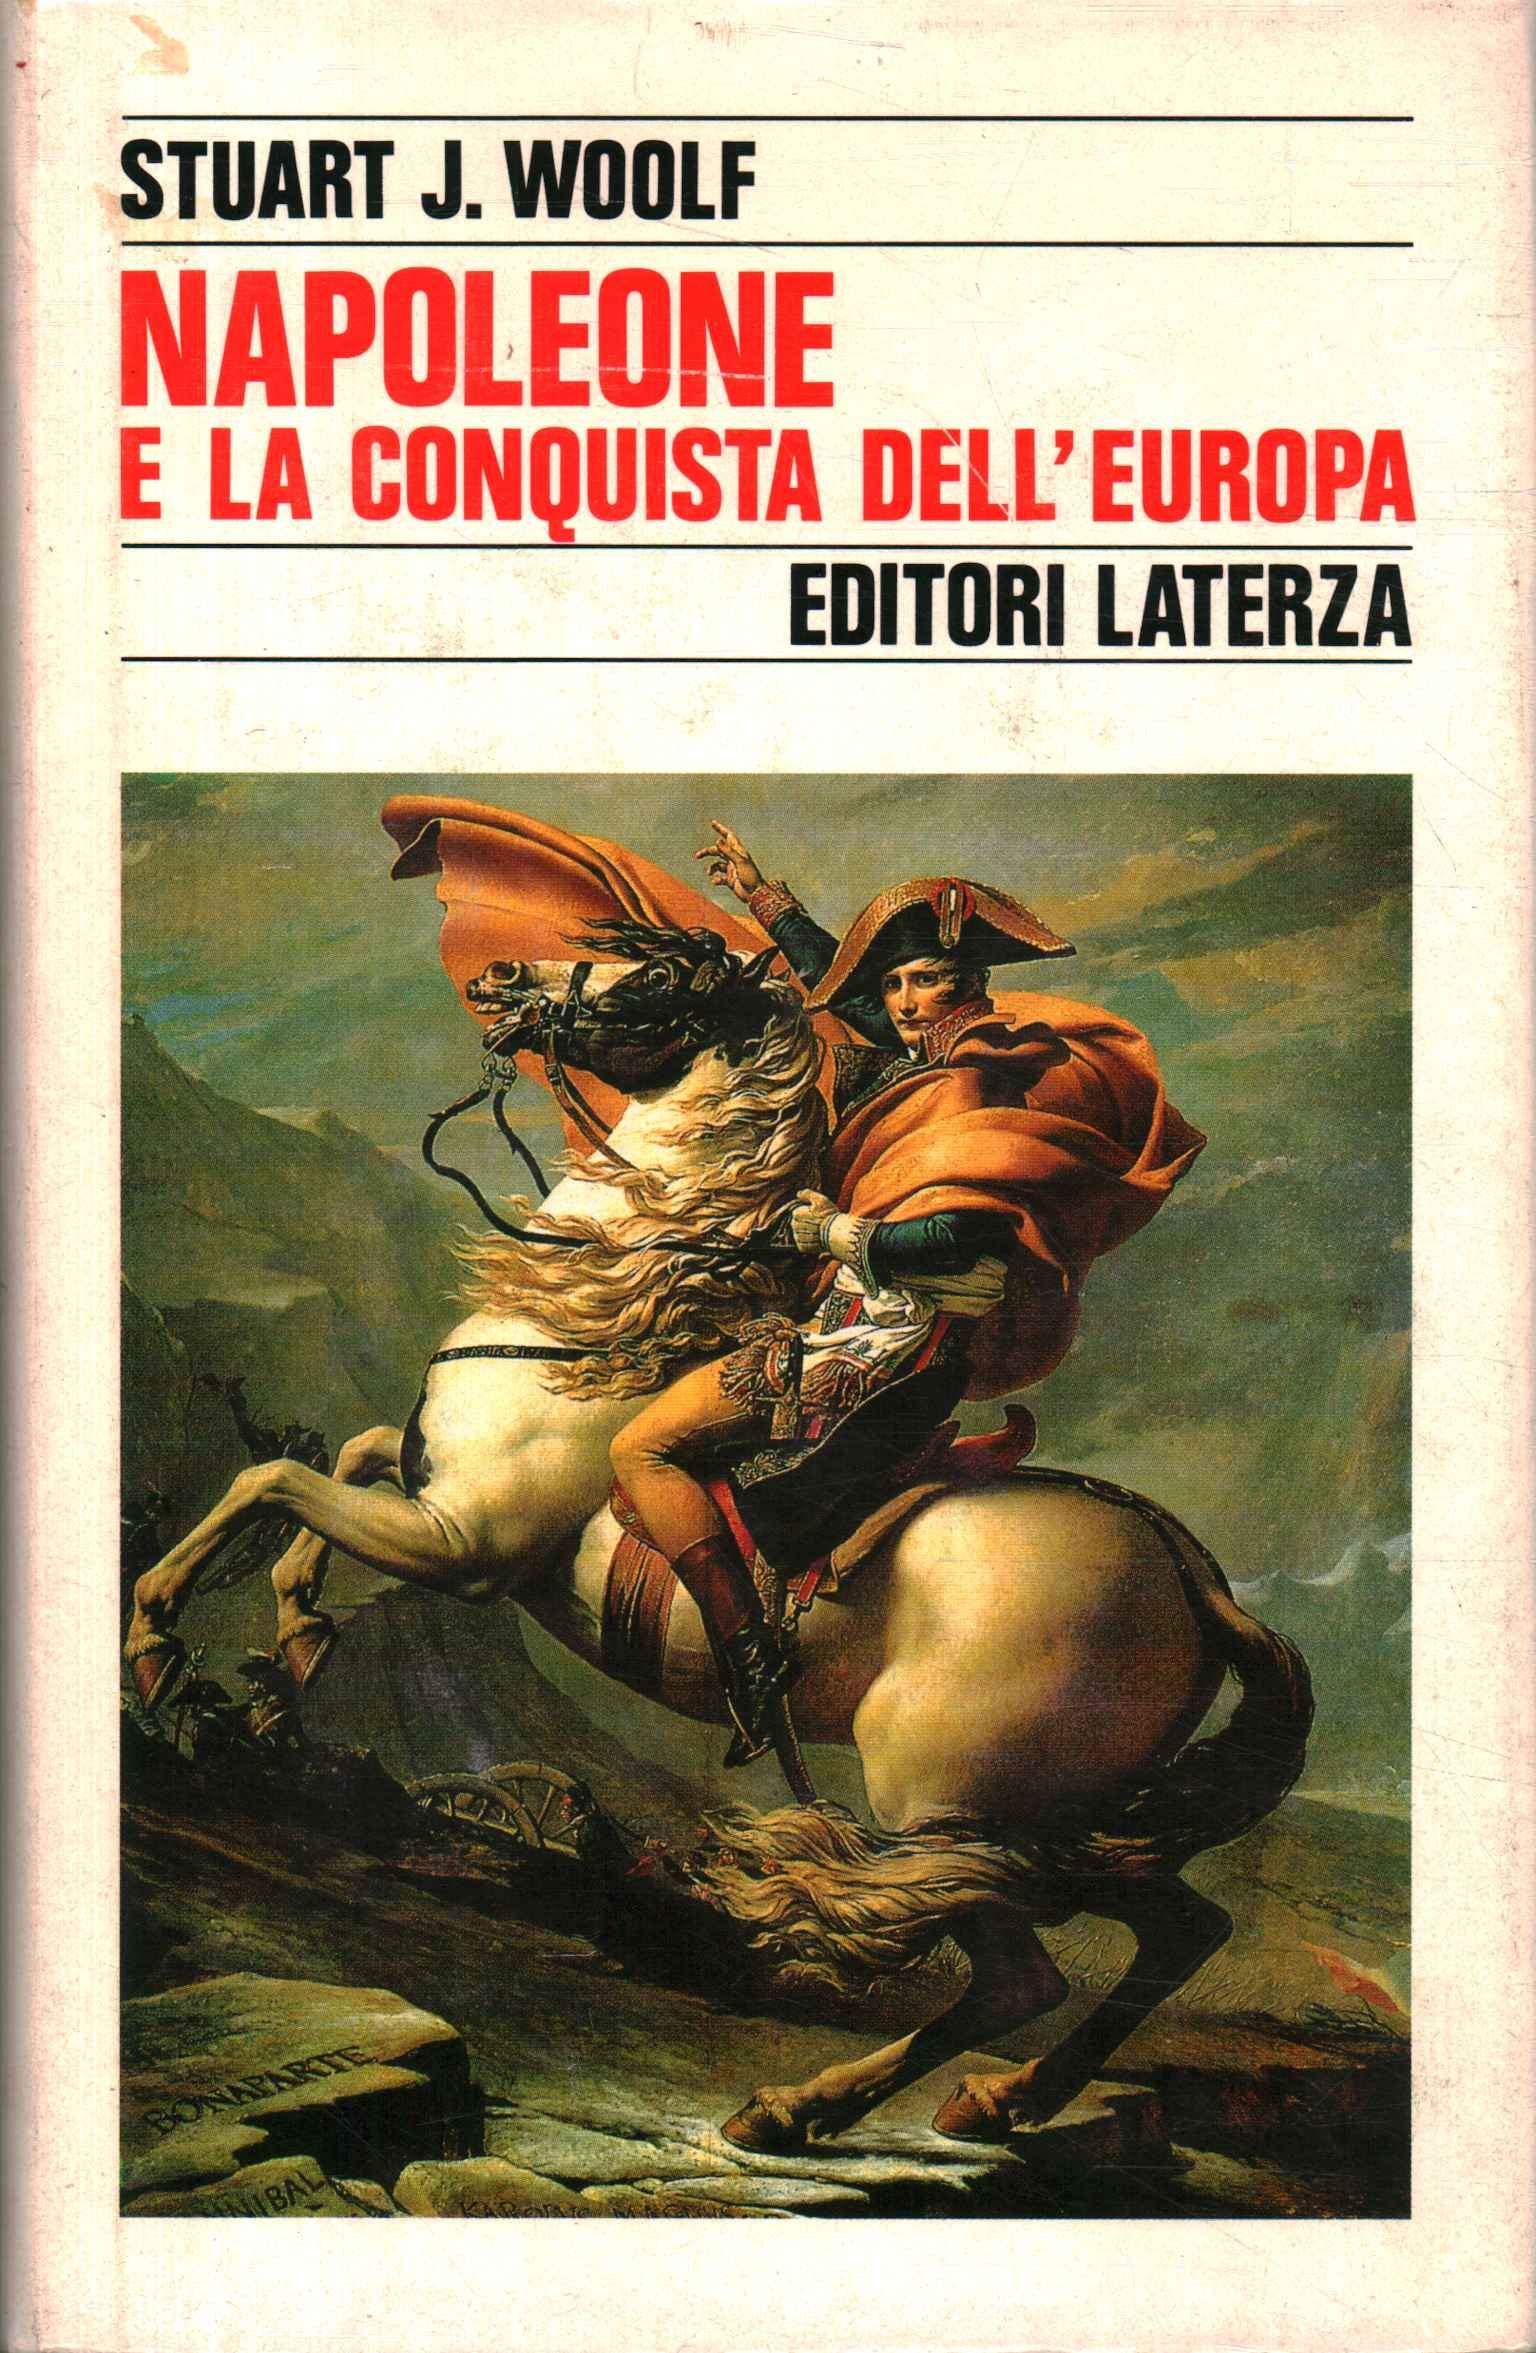 Napoleon and the conquest of E